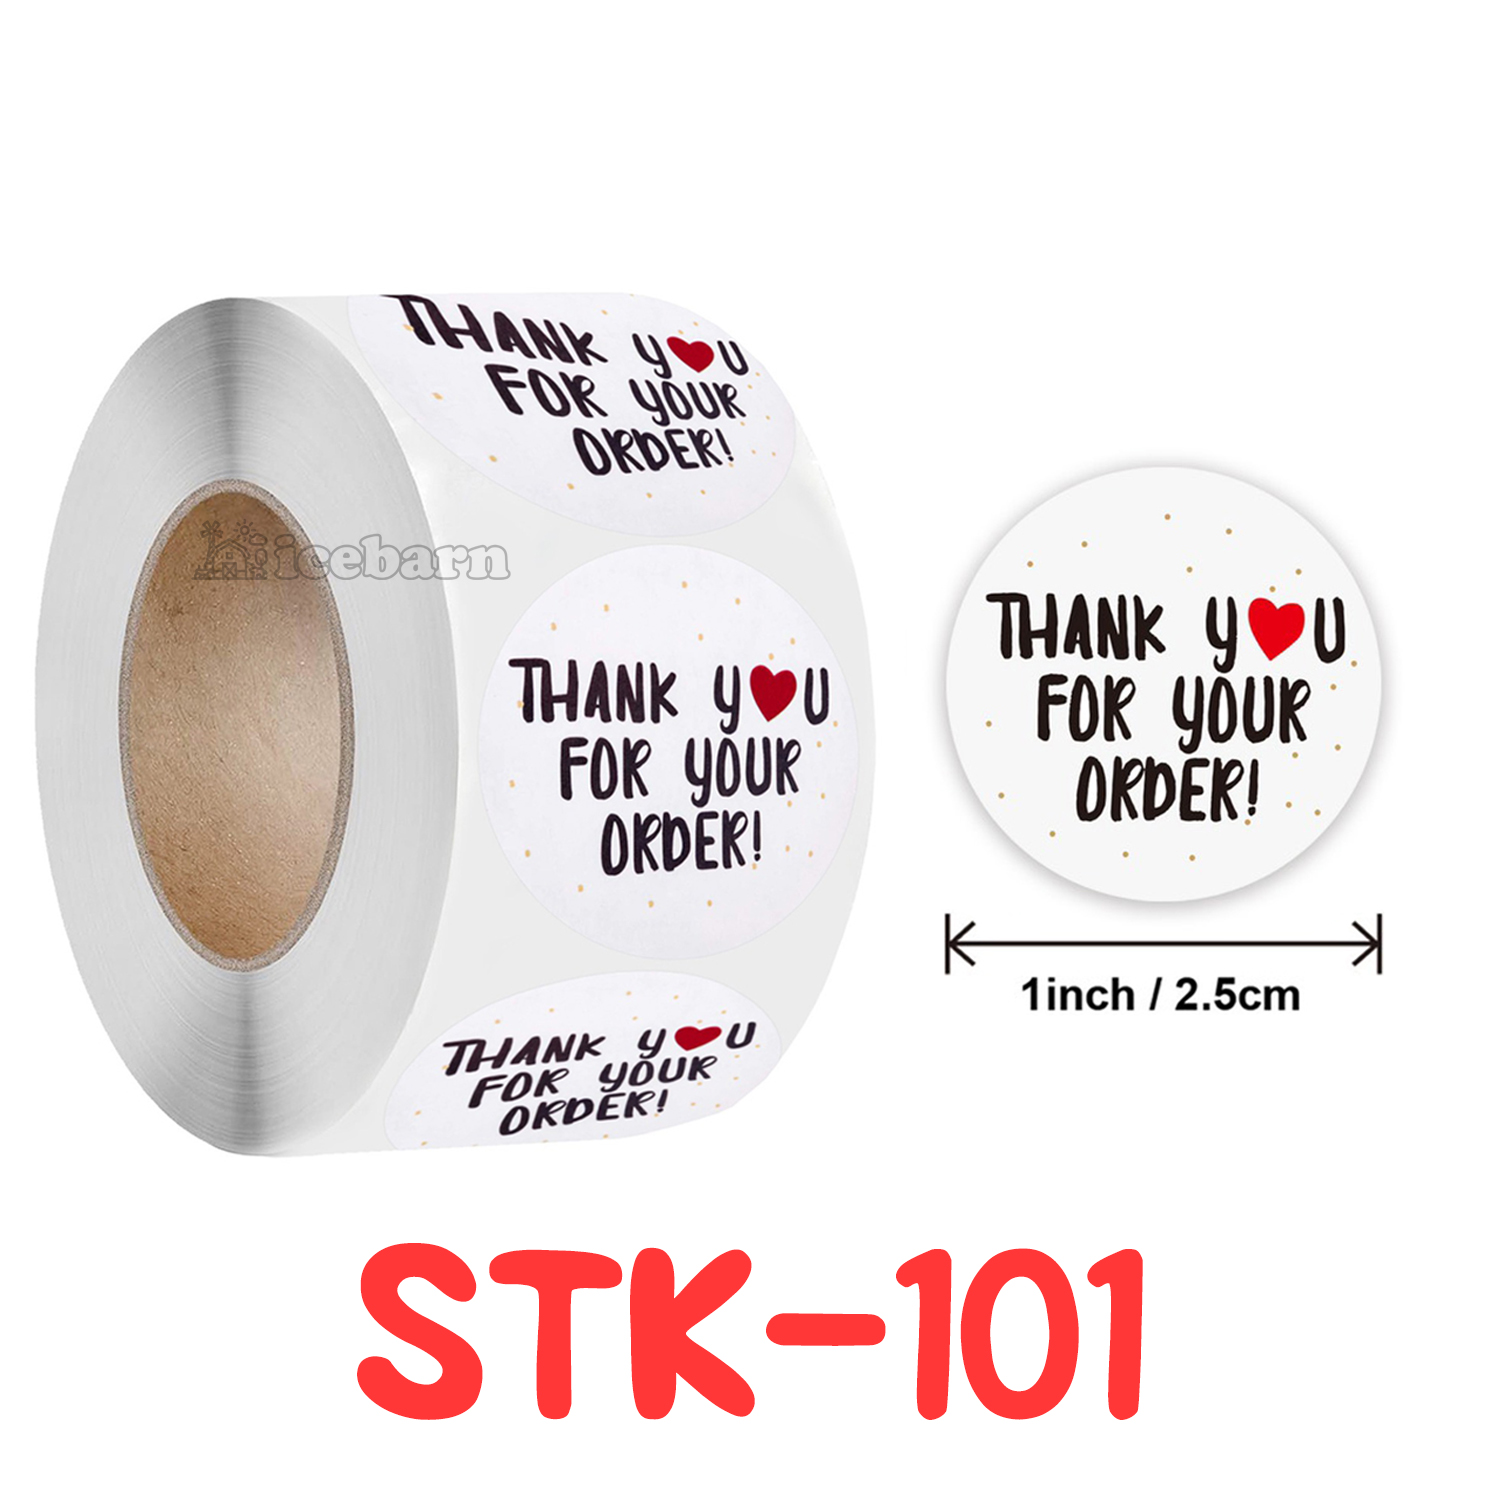 ม้วน 100 ดวง สติกเกอร์ขอบคุณ สติกเกอร์ ขอบคุณ แบบเยอะมาก! (STK-1) Various Pattern Thankyou Sticker Thank You Sticker (100 Pieces/Roll)